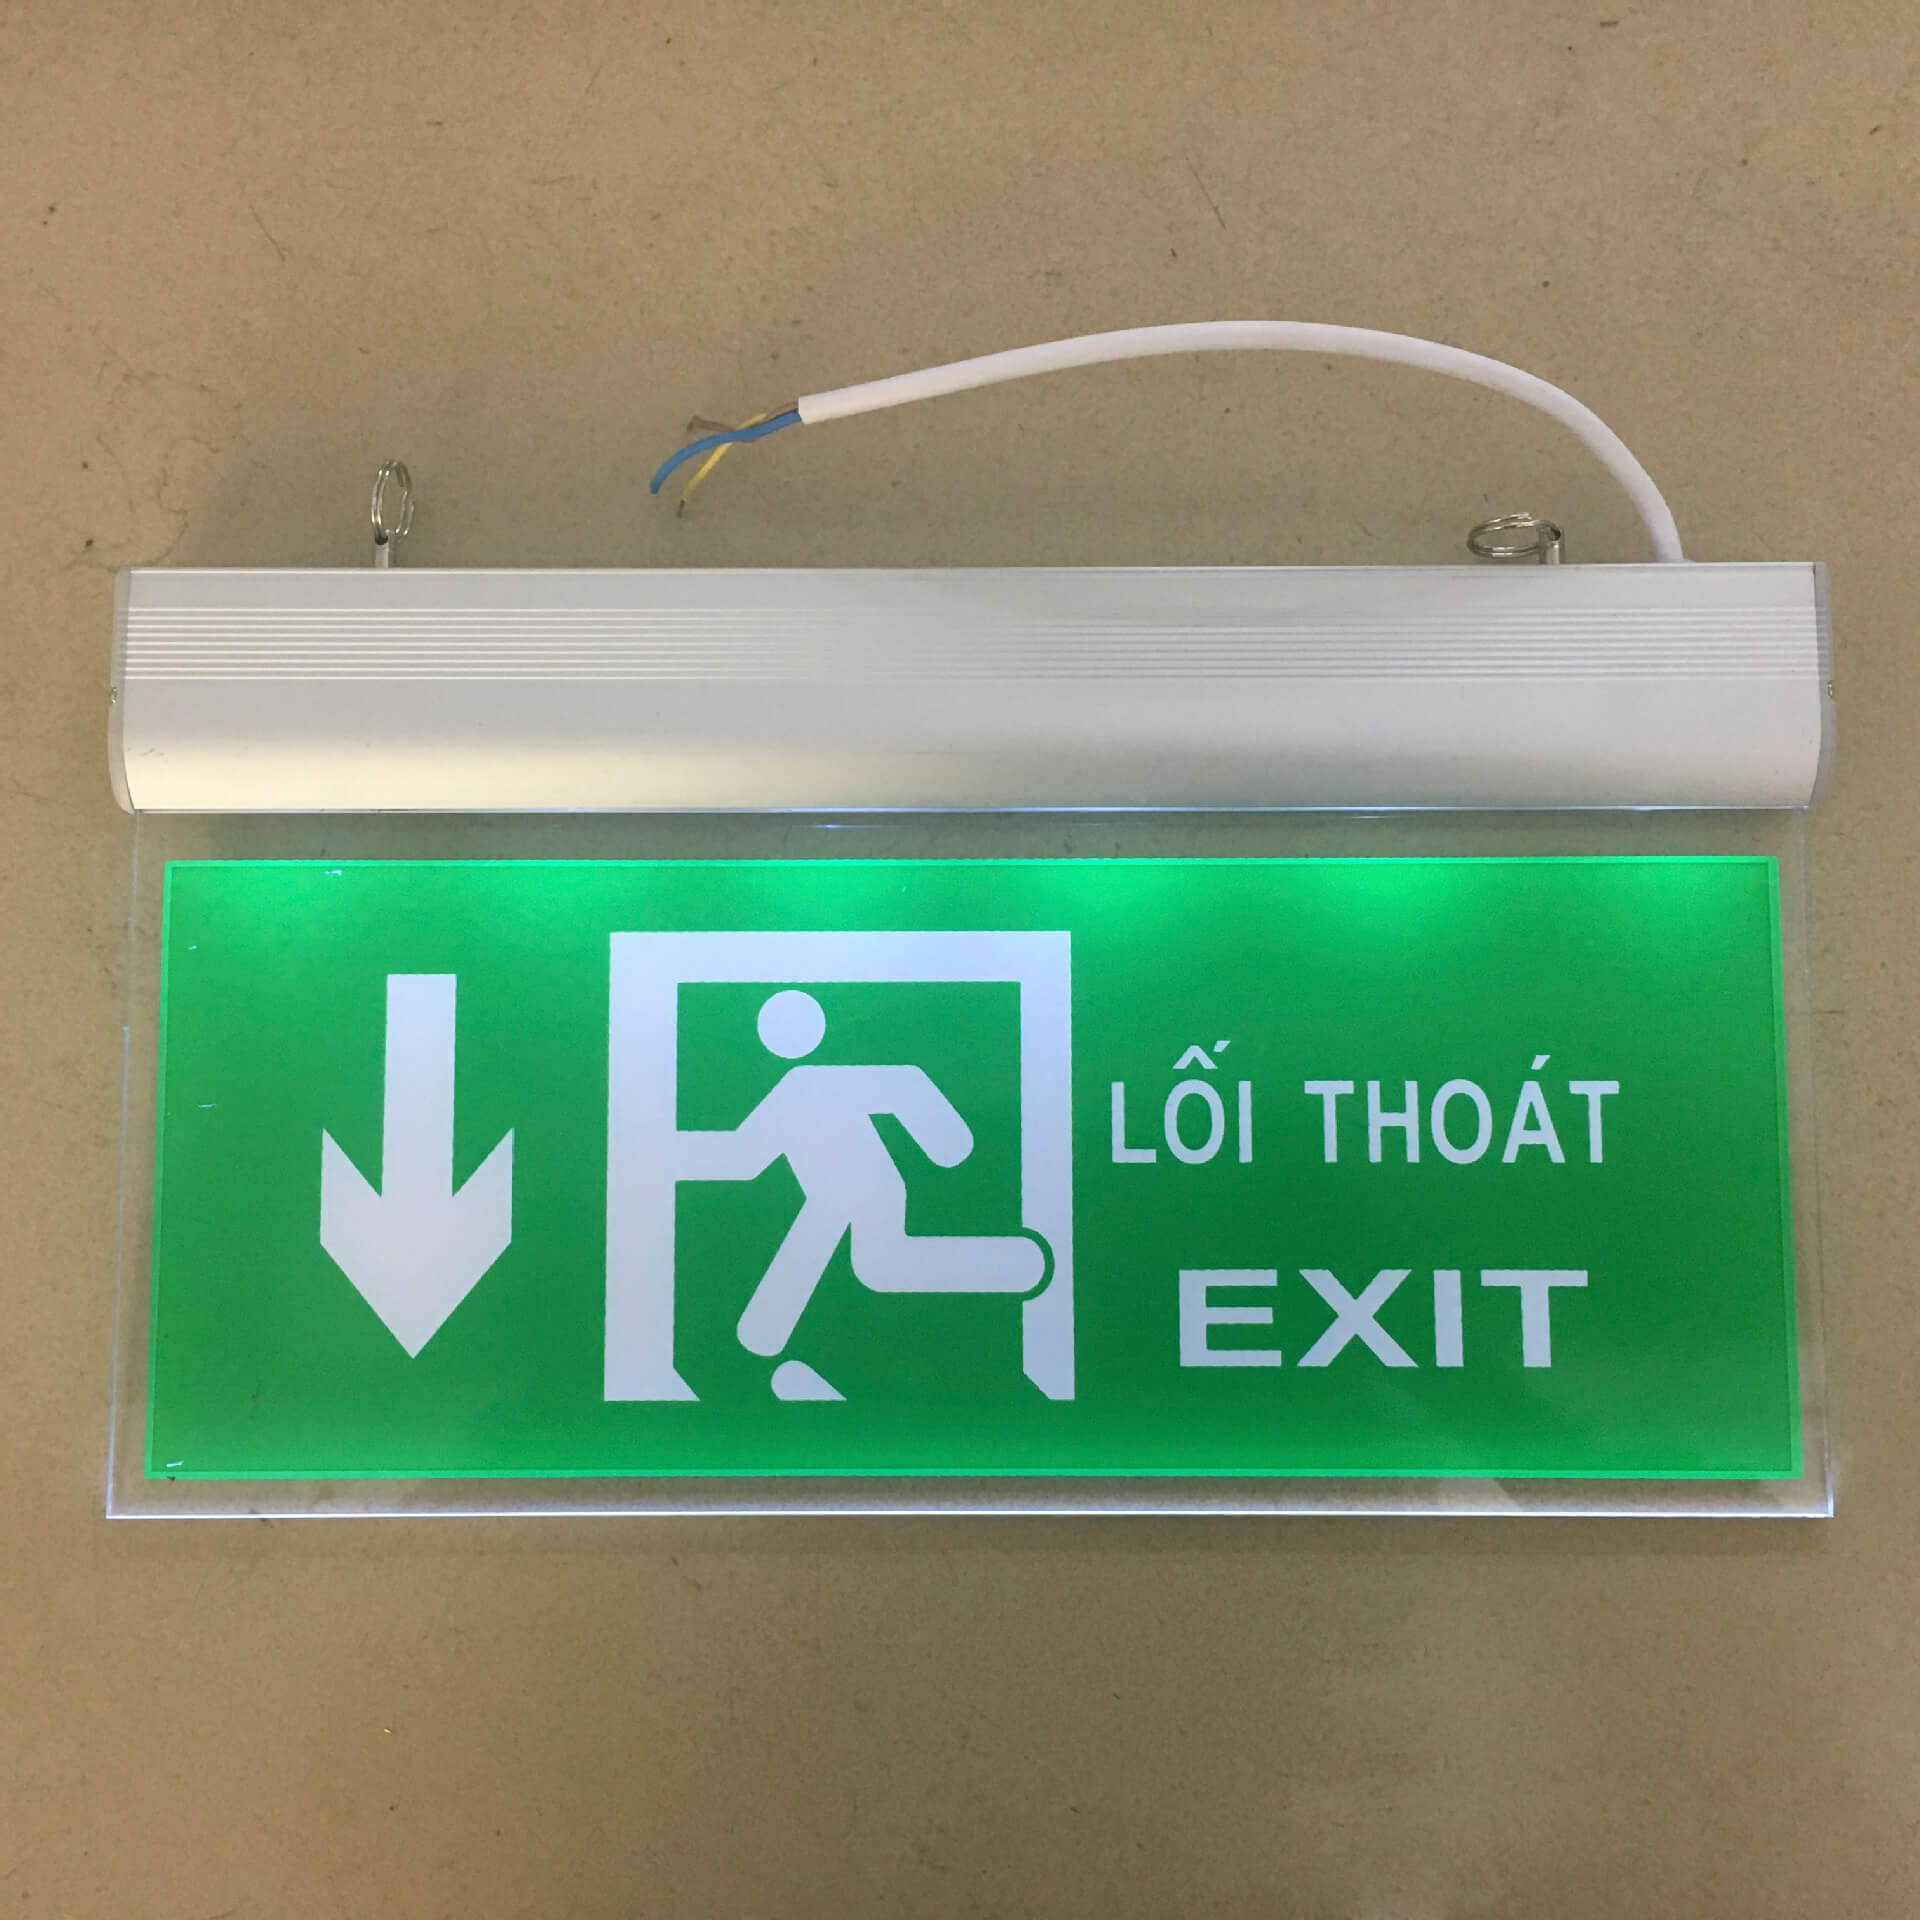 Phải lắp đặt đèn exit theo đúng quy định